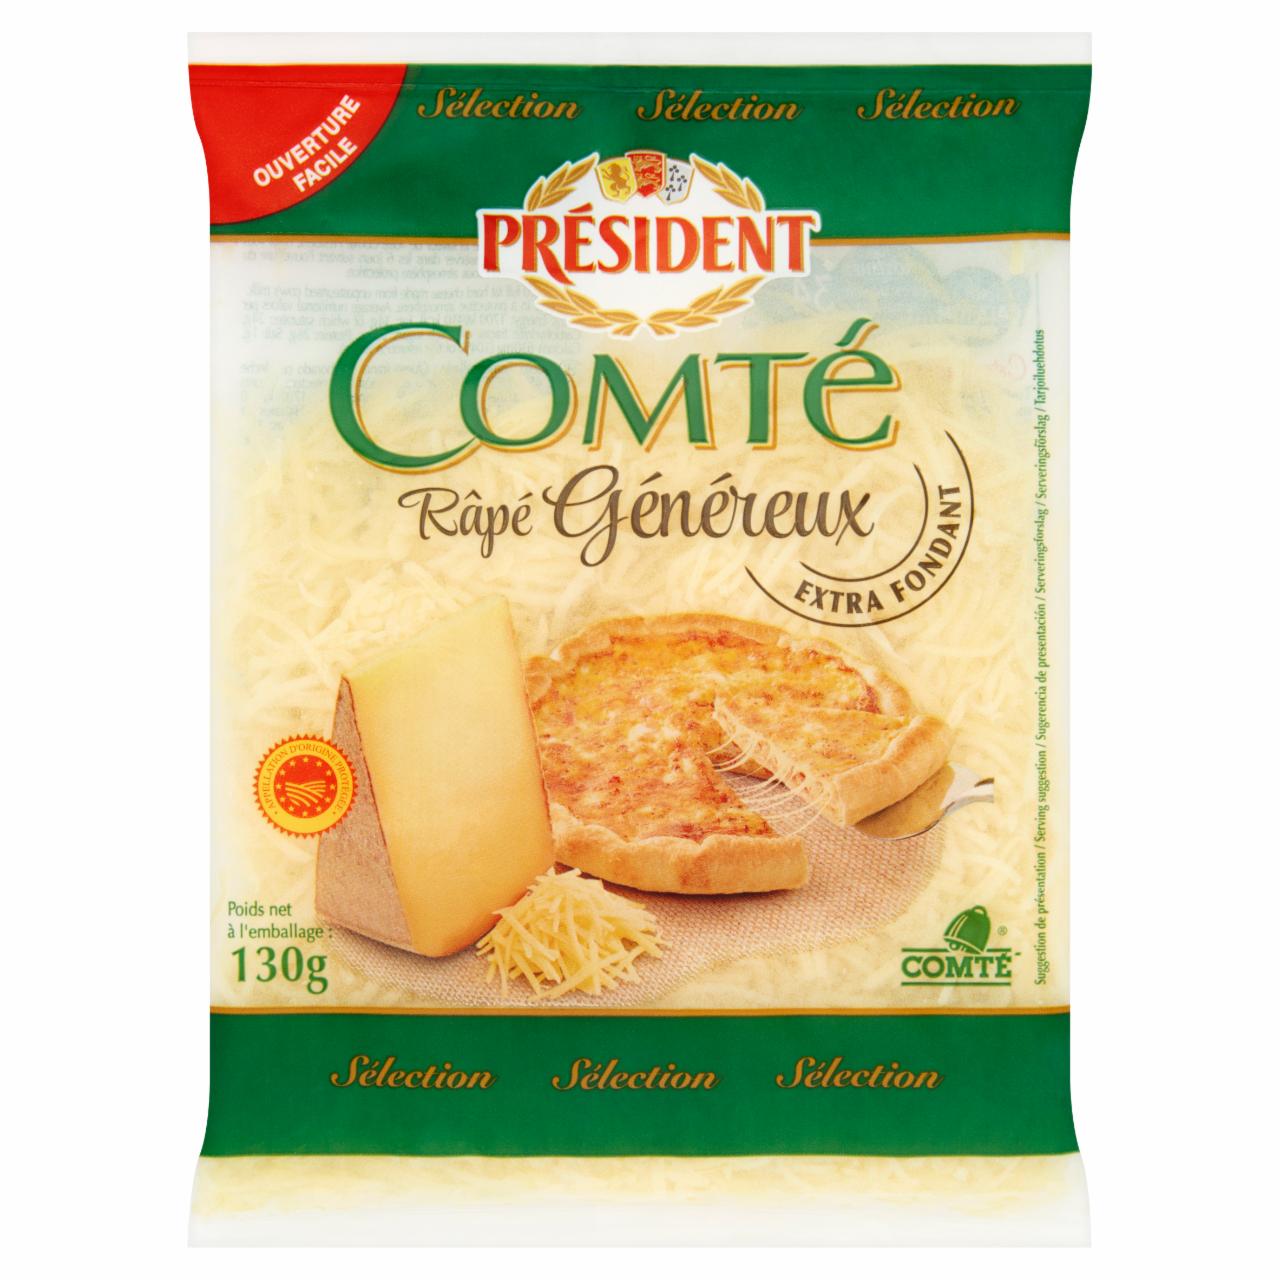 Képek - Président Comté reszelt, zsíros, kemény sajt 130 g